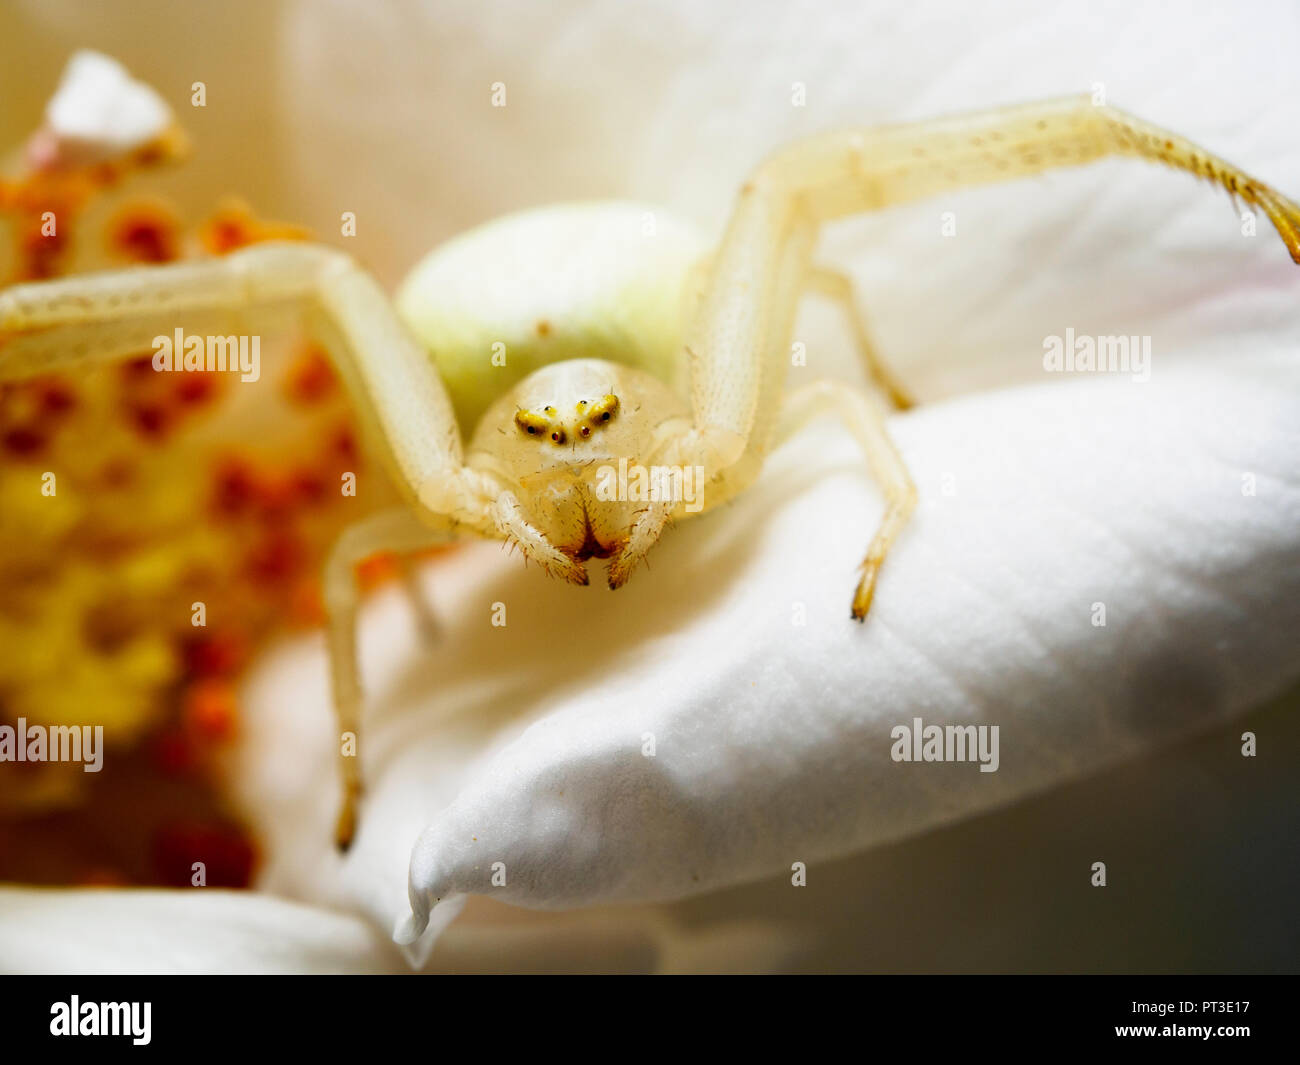 Araignée crabe (Misumena vatia) - Ombrie, Italie Banque D'Images